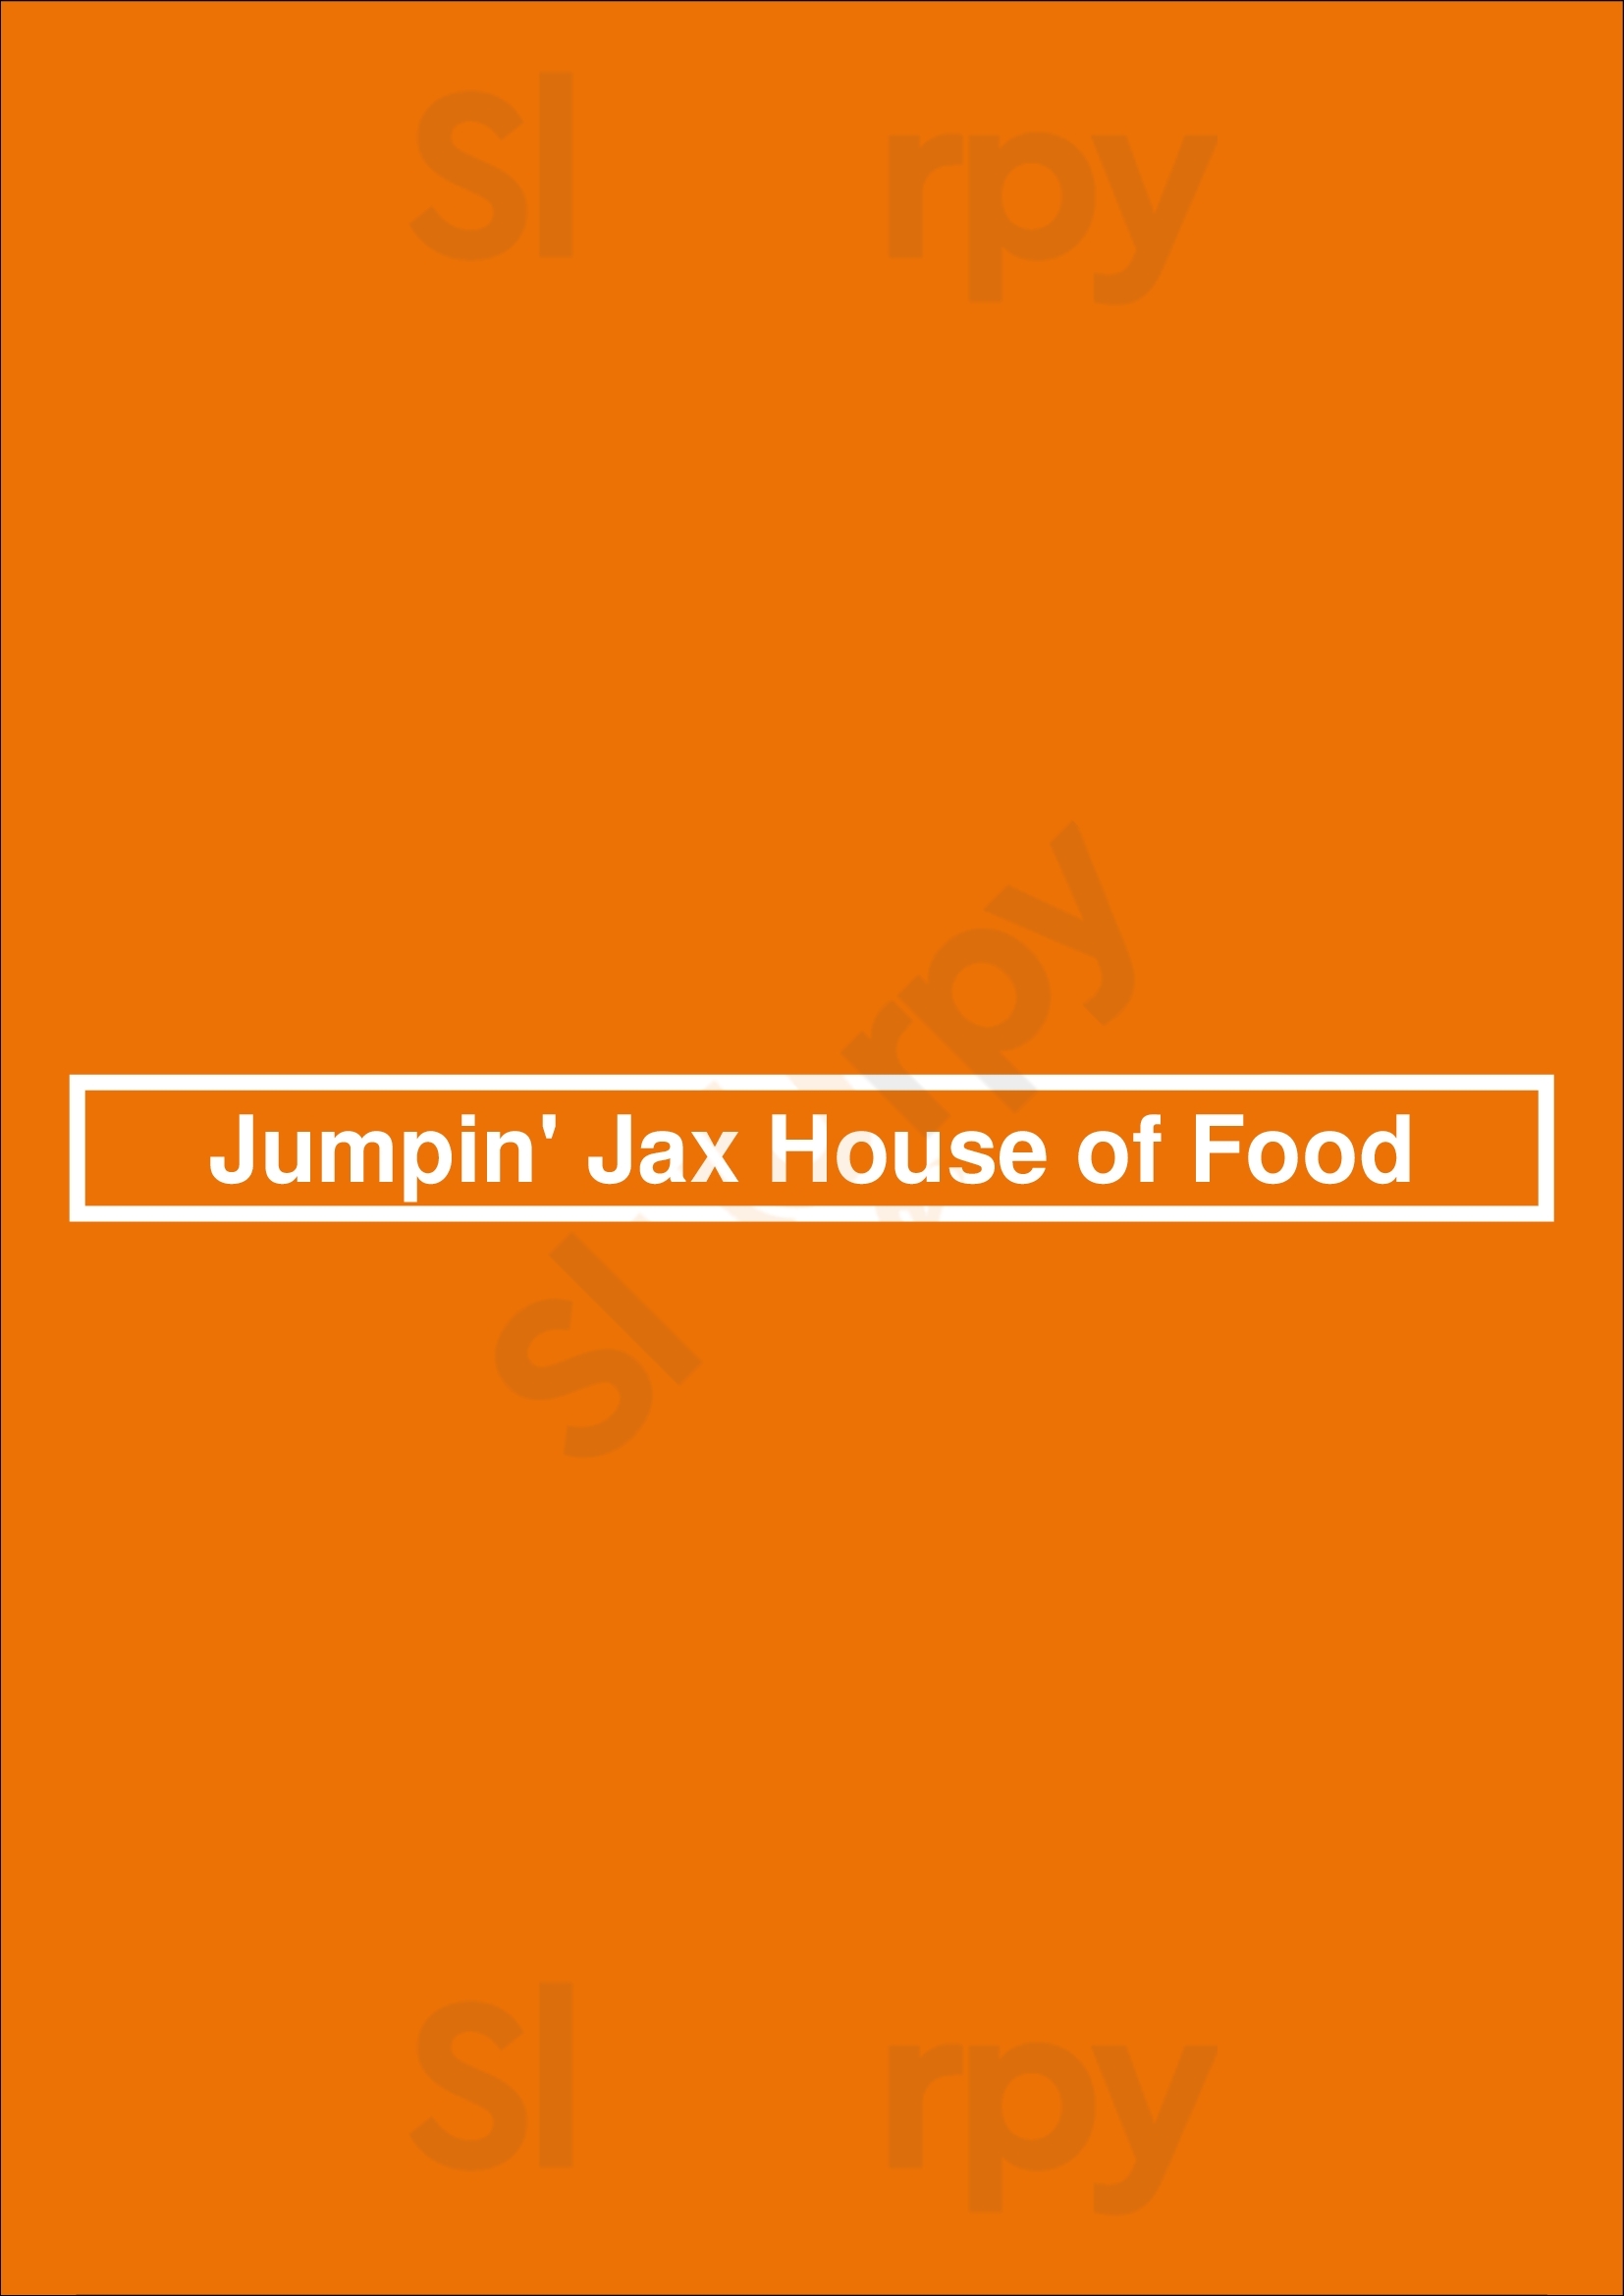 Jumpin' Jax House Of Food Jacksonville Menu - 1